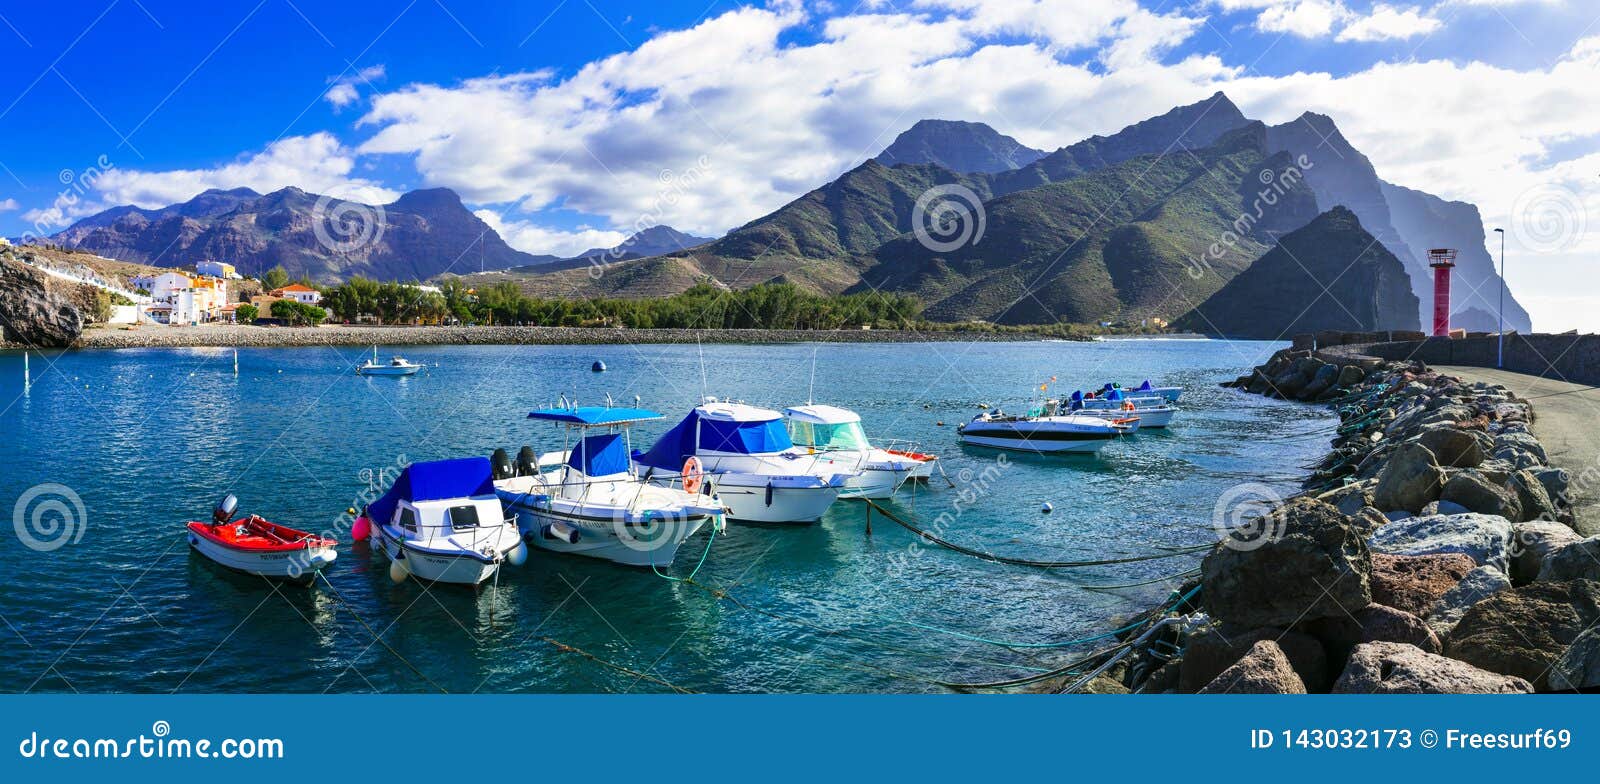 gran canaria island- picturesque traditional fishing village la aldea de san nicolas de tolentino